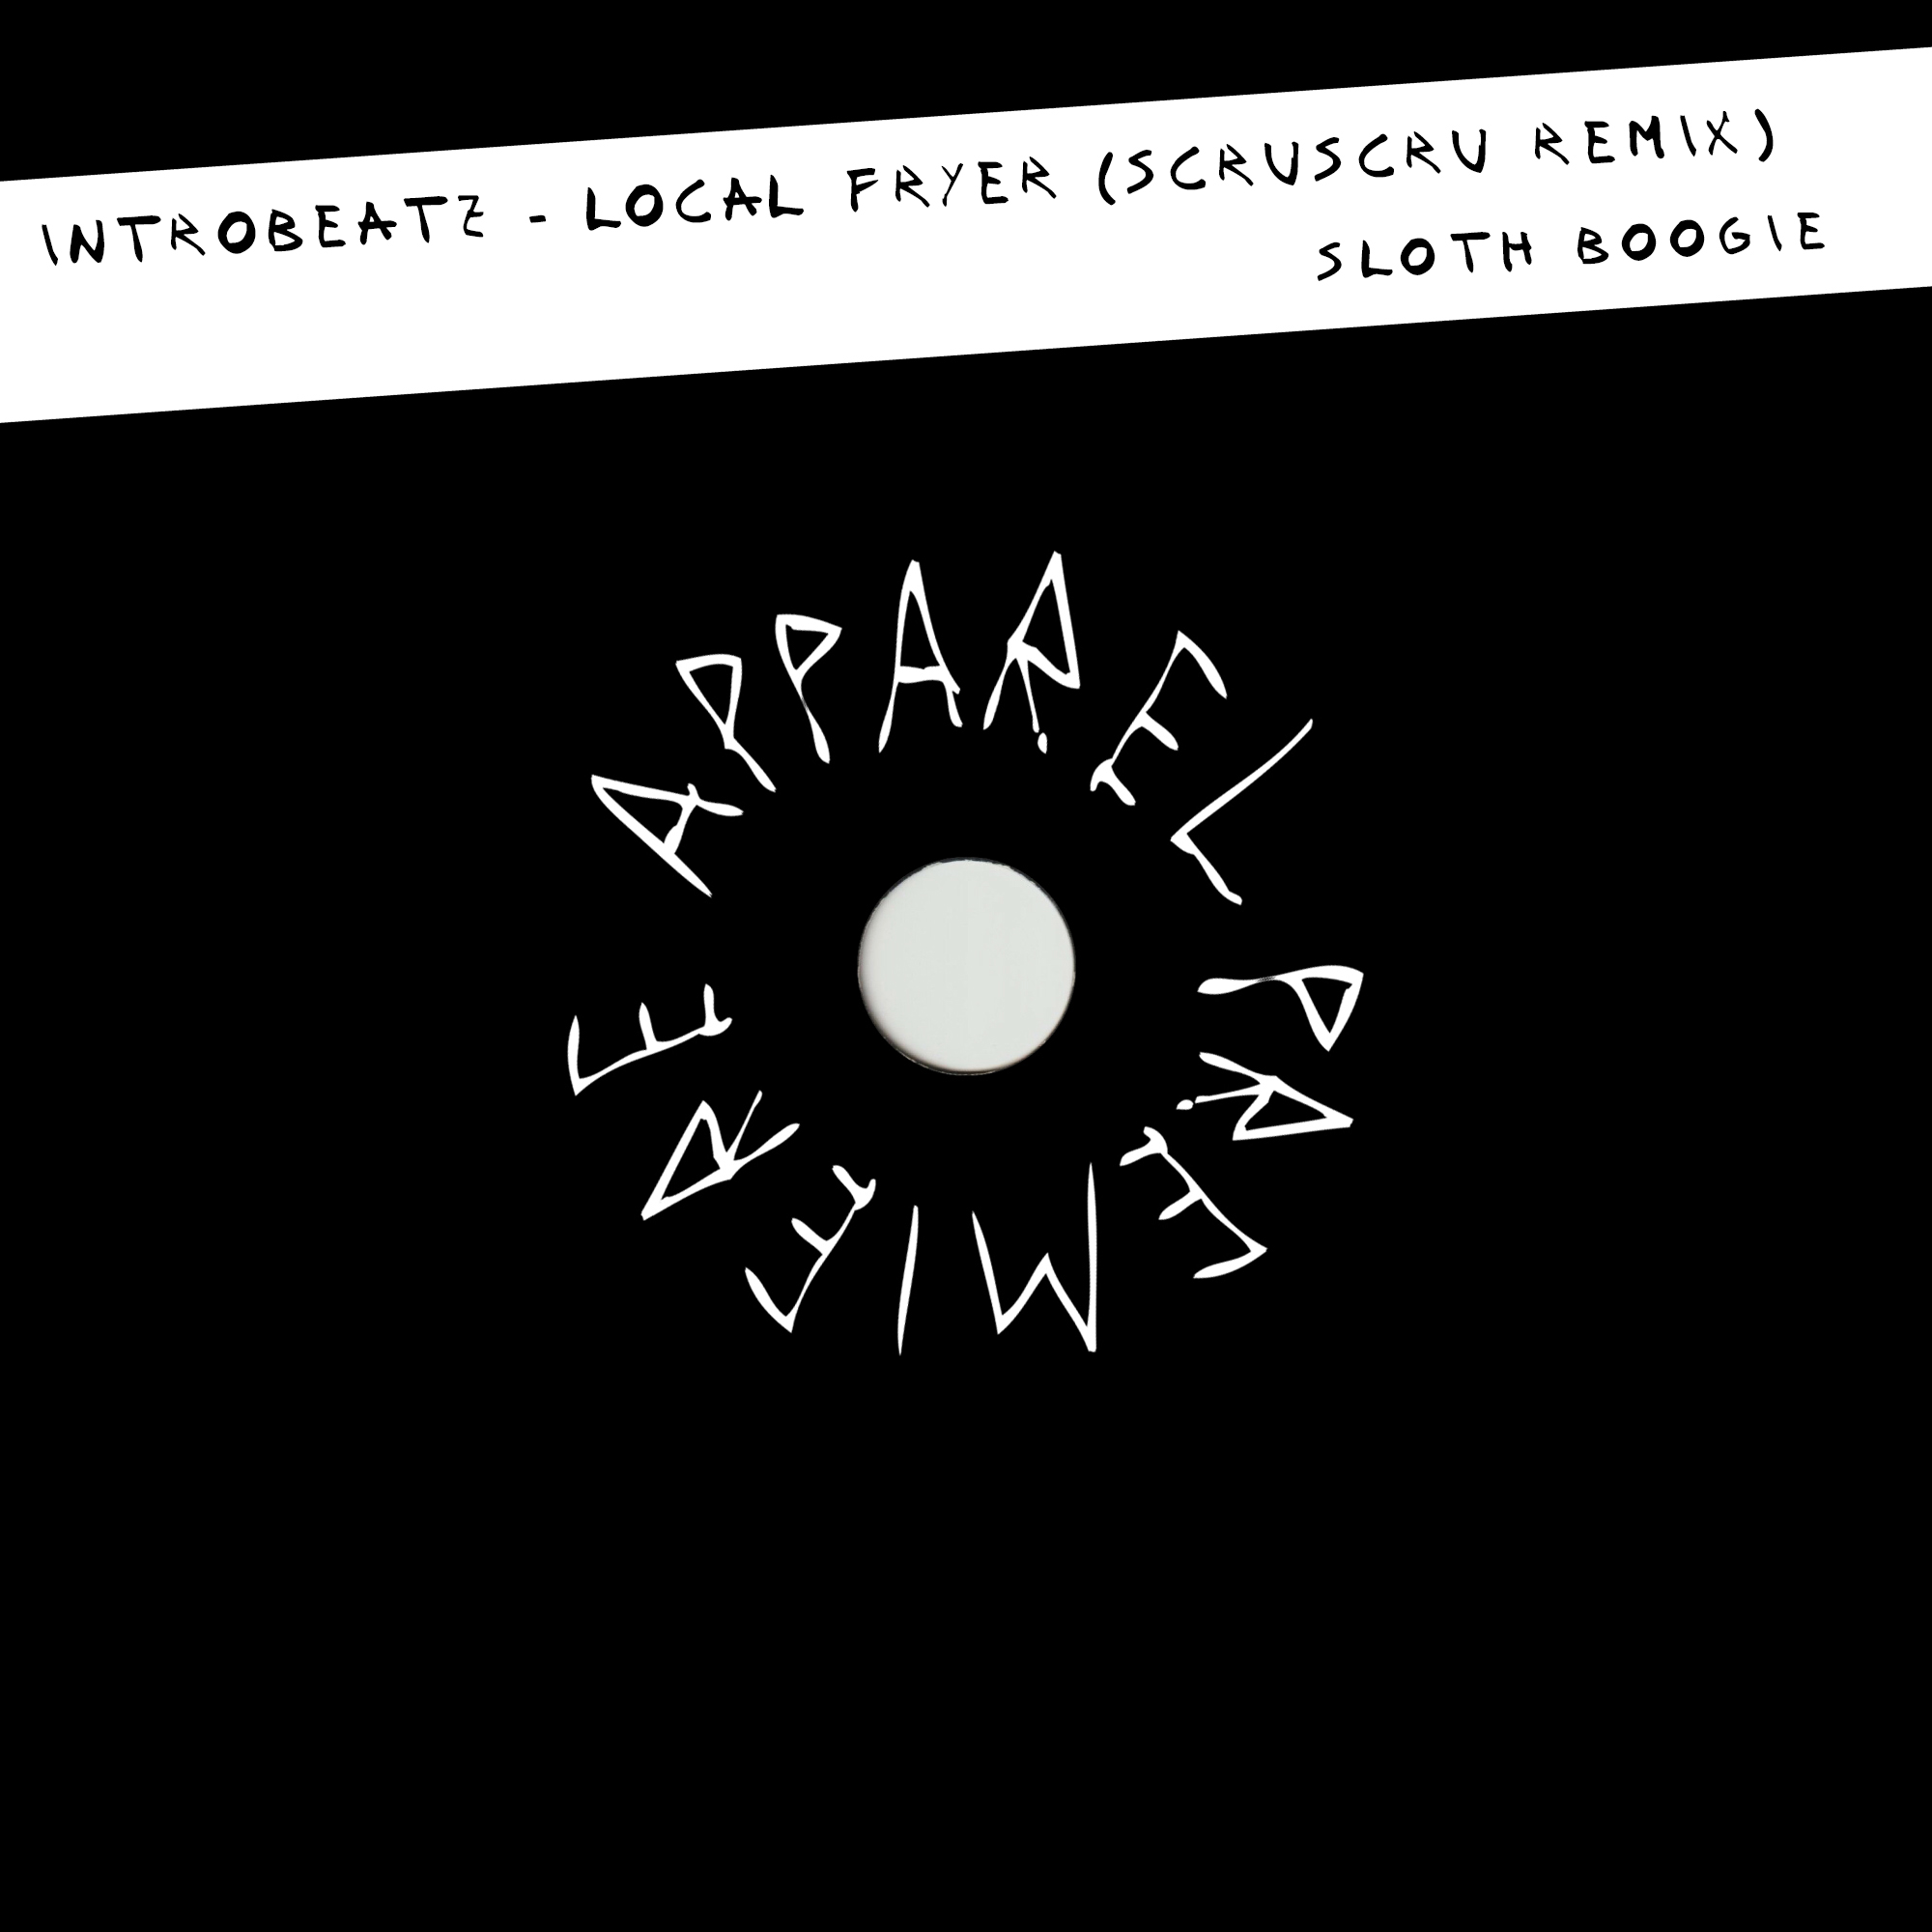 APPAREL PREMIERE: Introbeatz – Local Fryer (Scruscru Remix) [Sloth Boogie]